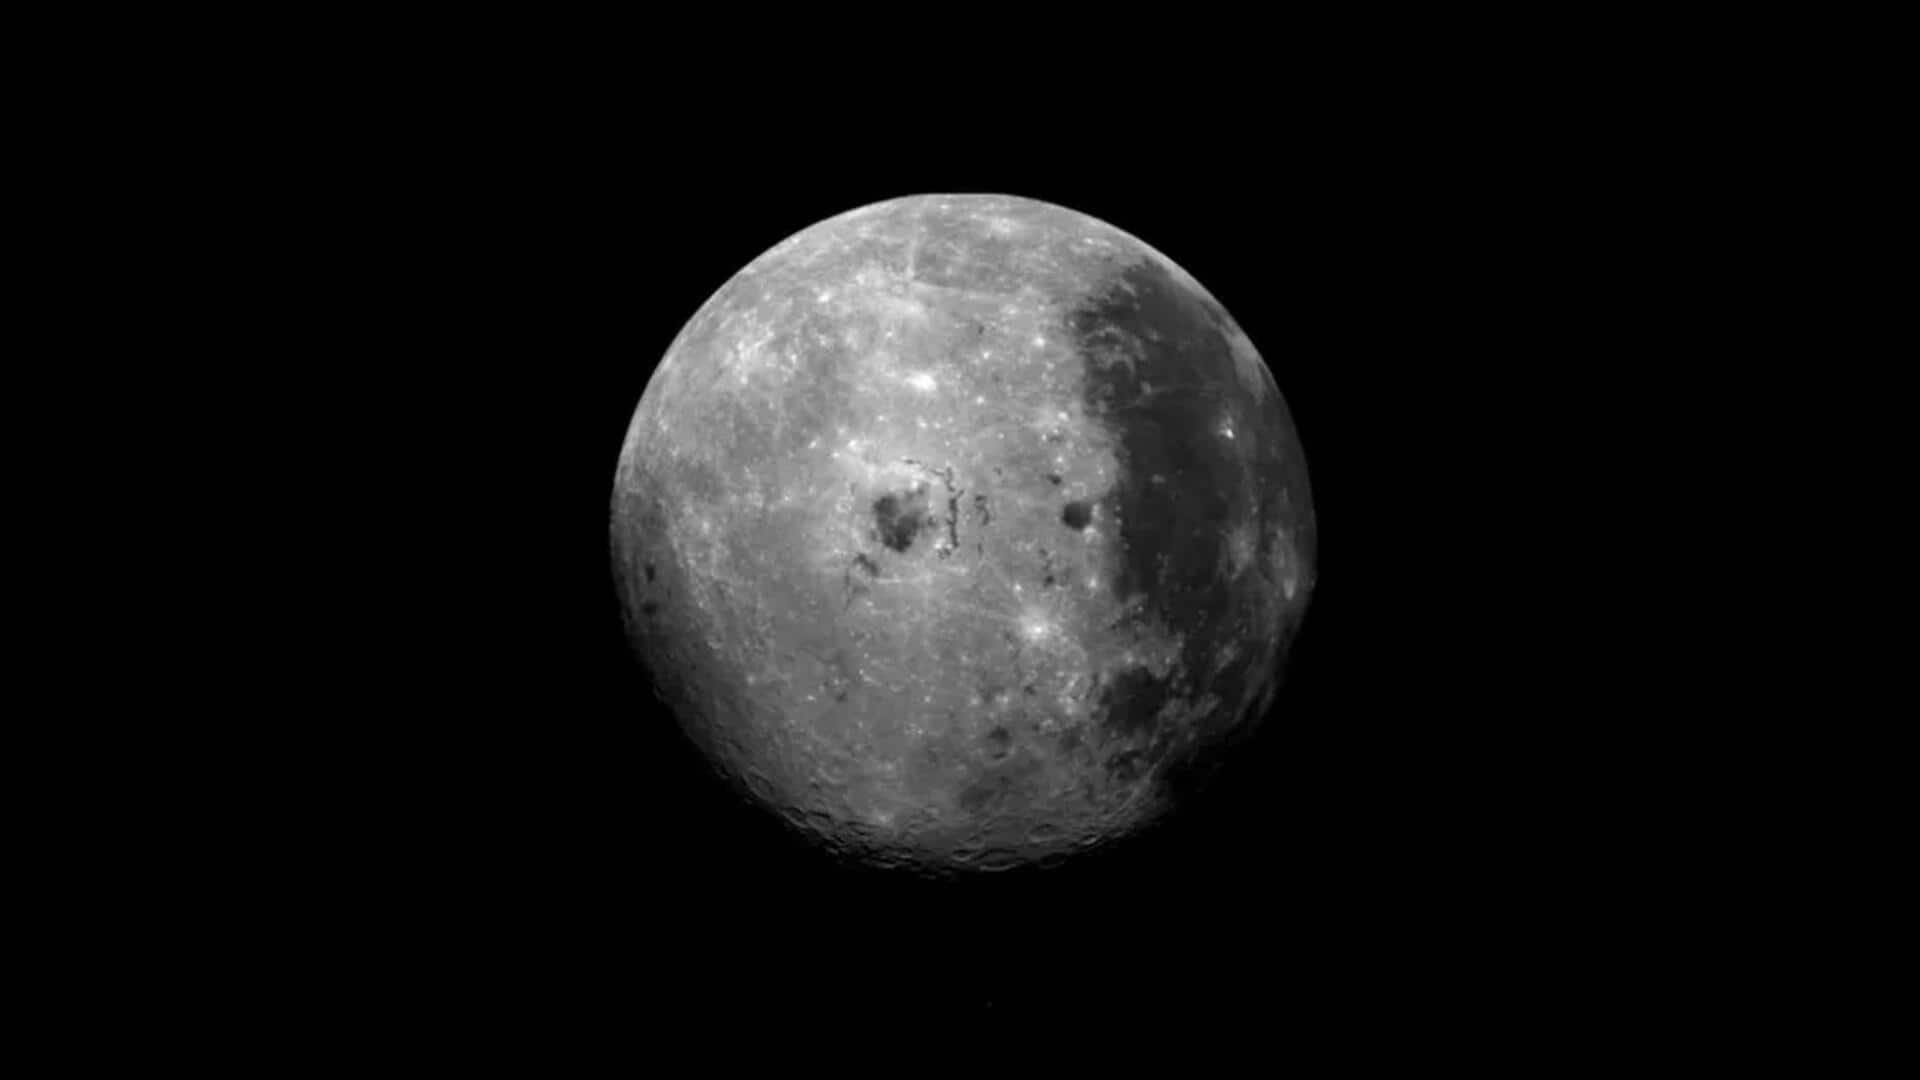 चंद्रमा पर मिला ग्रेनाइट का बड़ा टुकड़ा, ज्वालामुखी विस्फोट का मिलता है संकेत